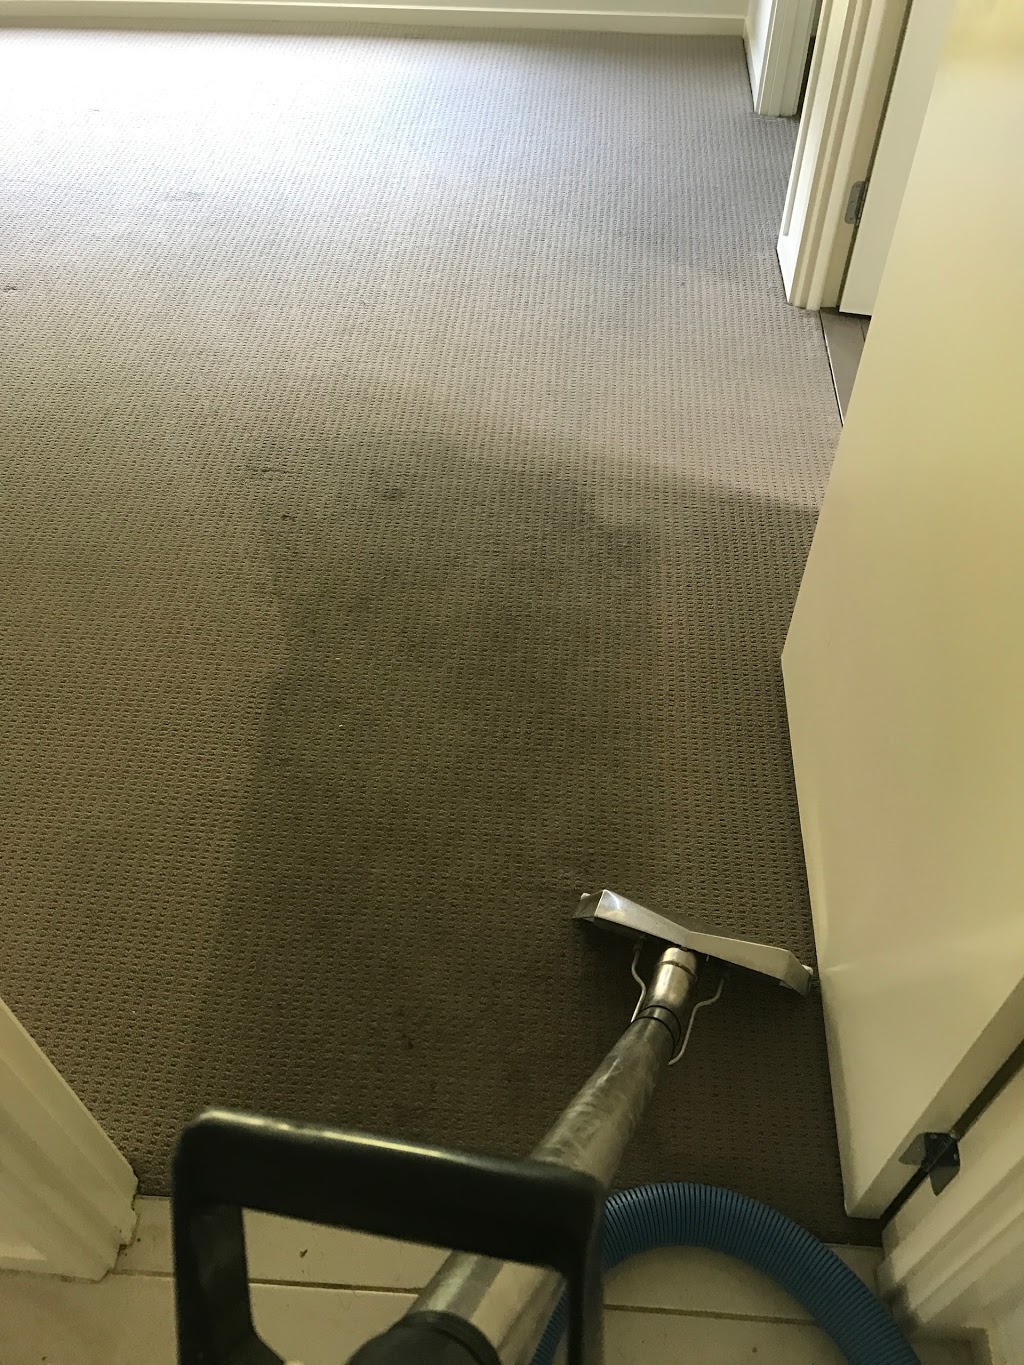 Newcastle carpet and tile cleaning | 51 Lambton Rd, Waratah NSW 2298, Australia | Phone: (02) 4009 1571